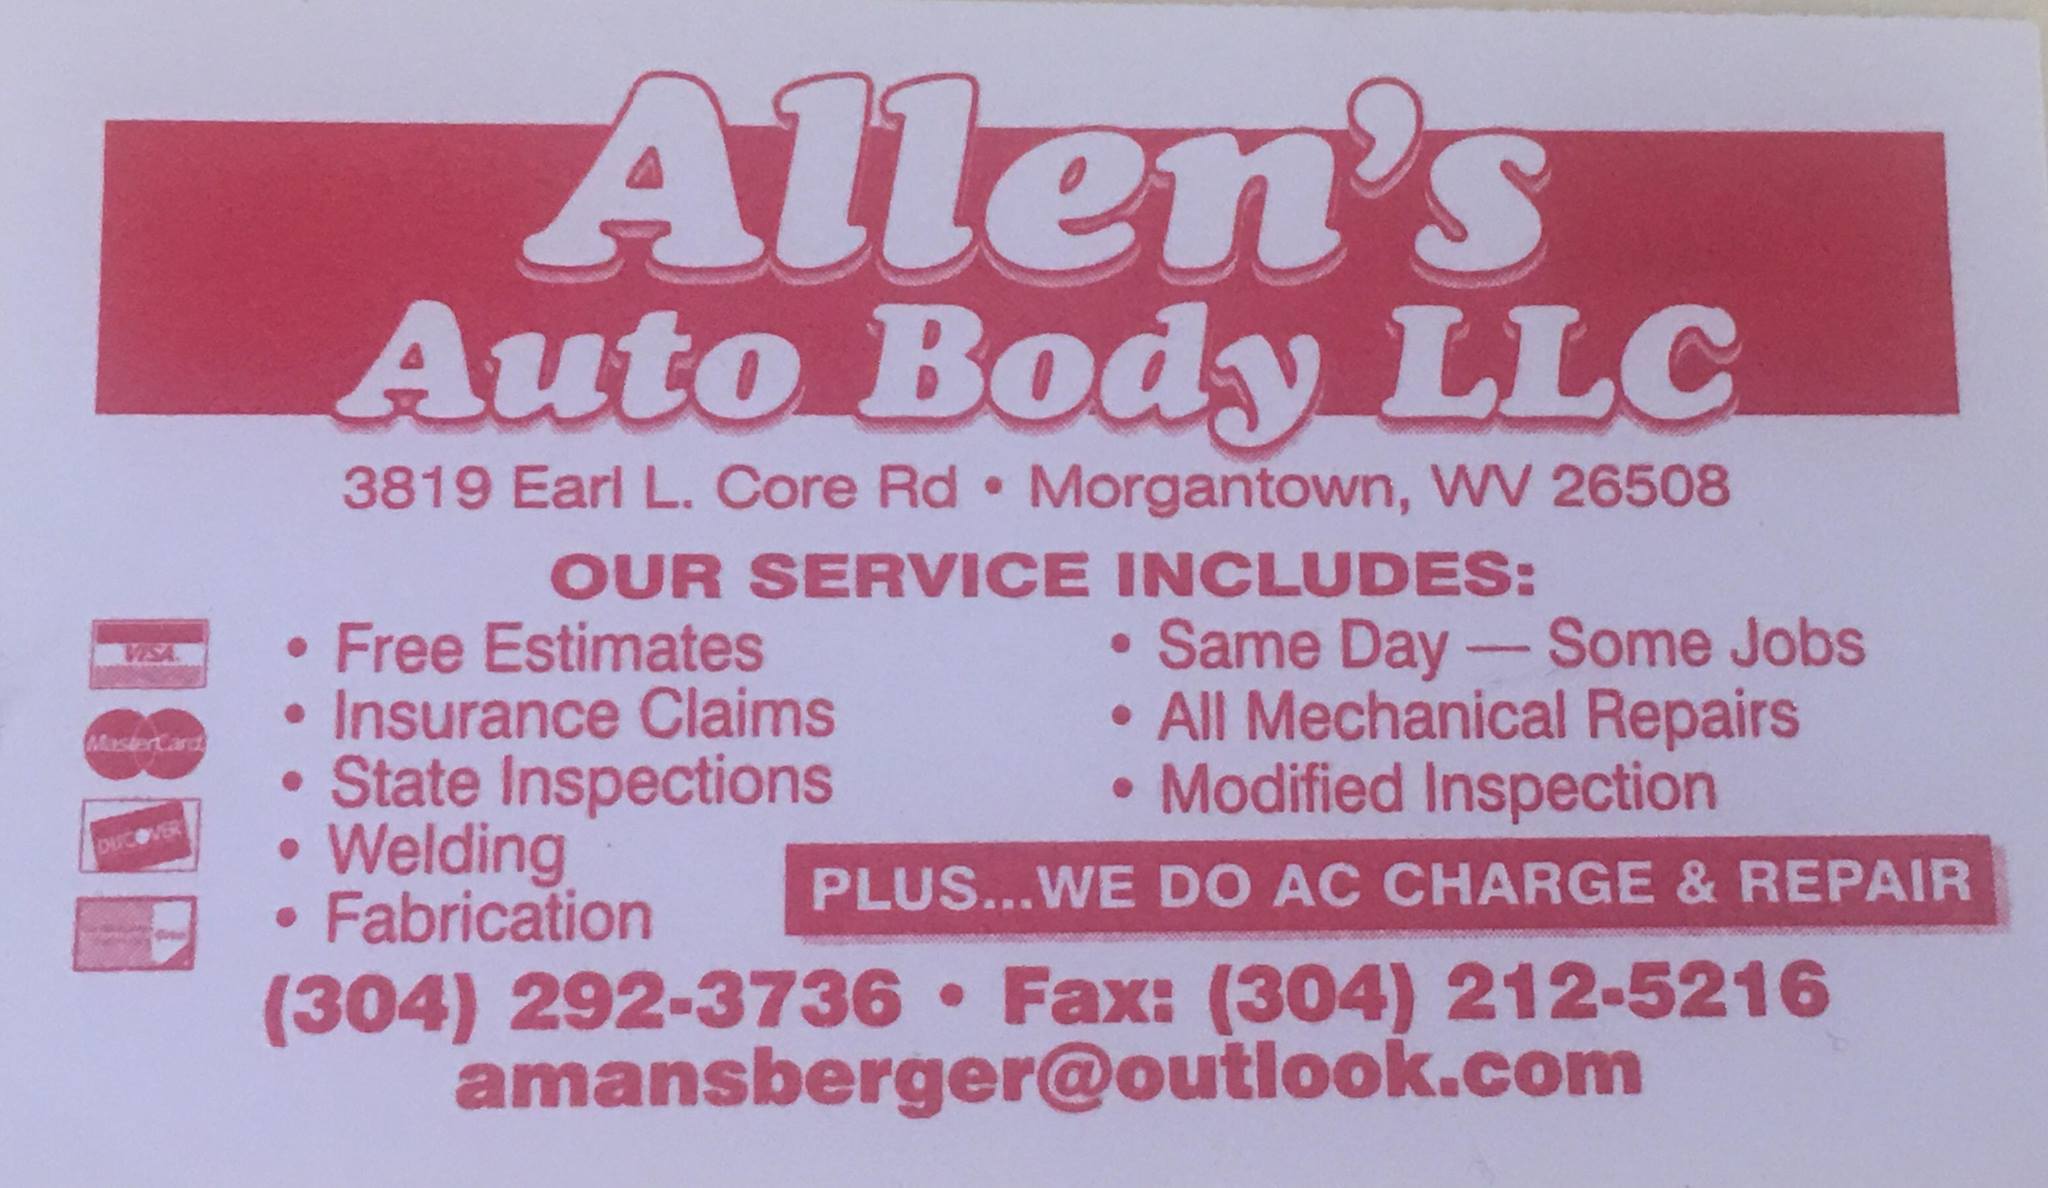 Allen's Auto Body